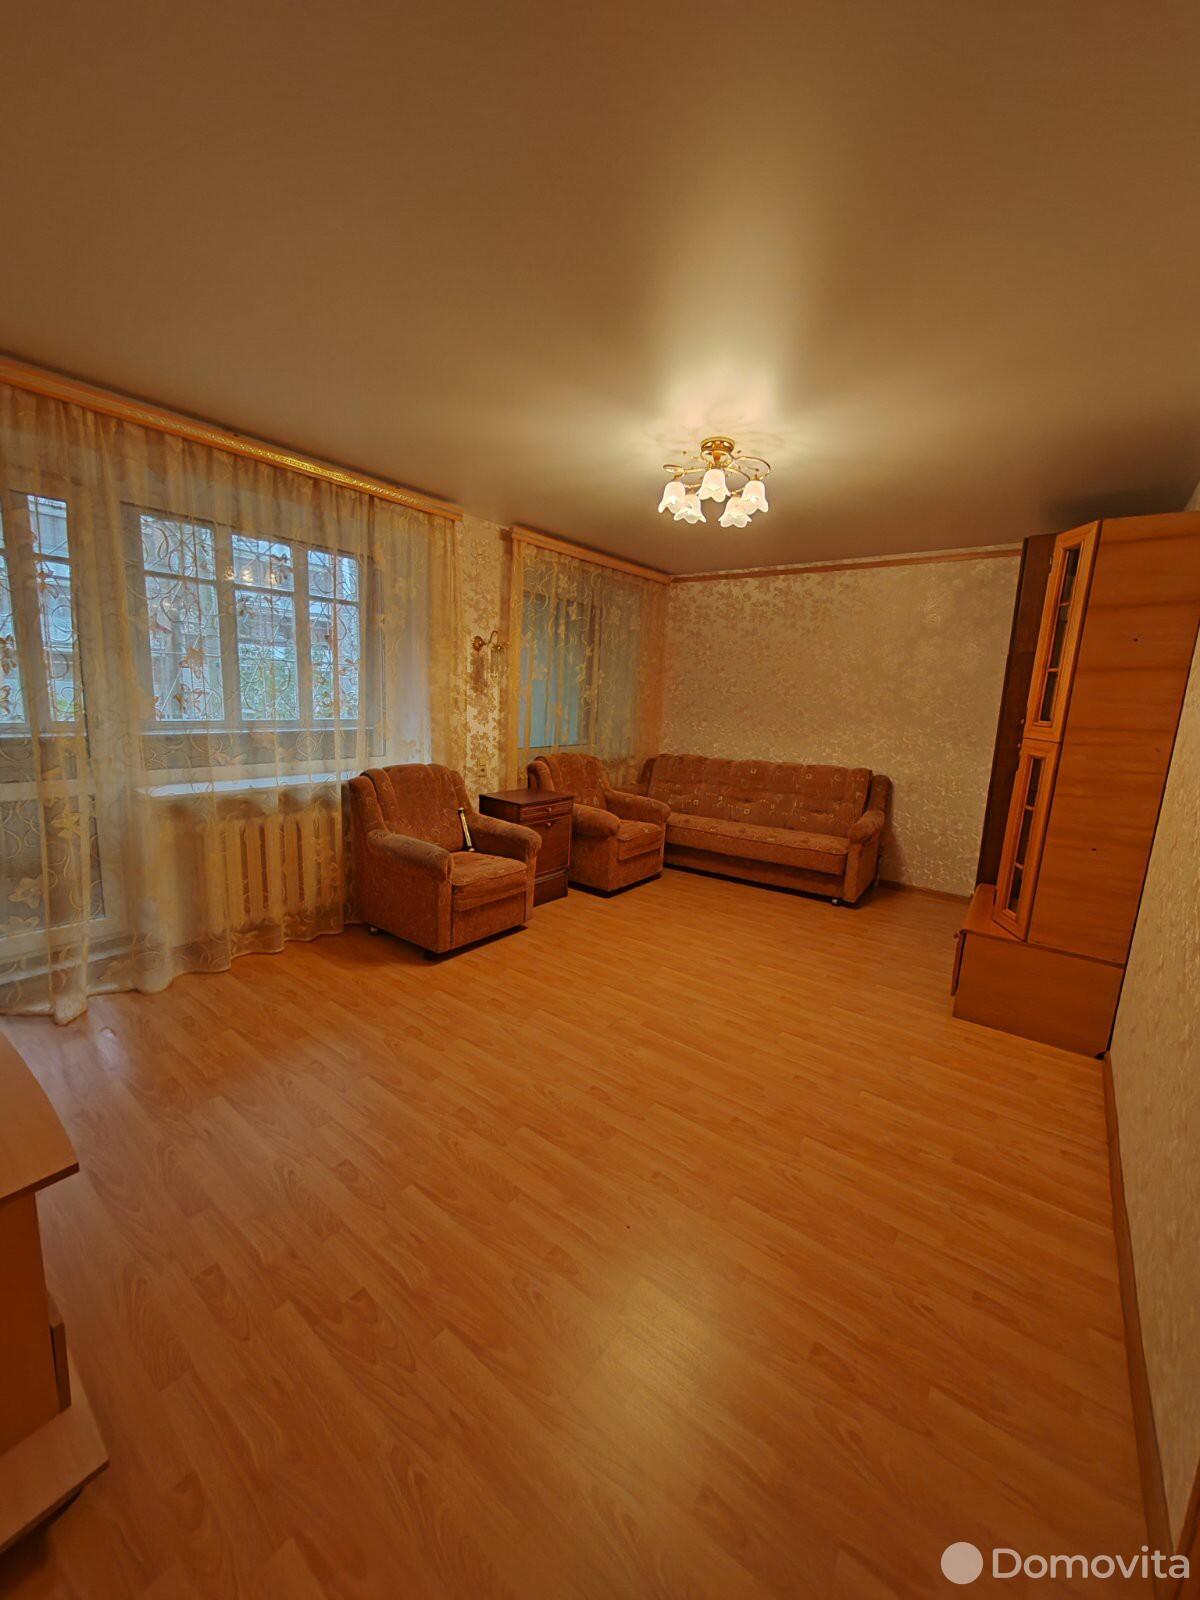 Цена продажи квартиры, Витебск, ул. Ильинского, д. 35